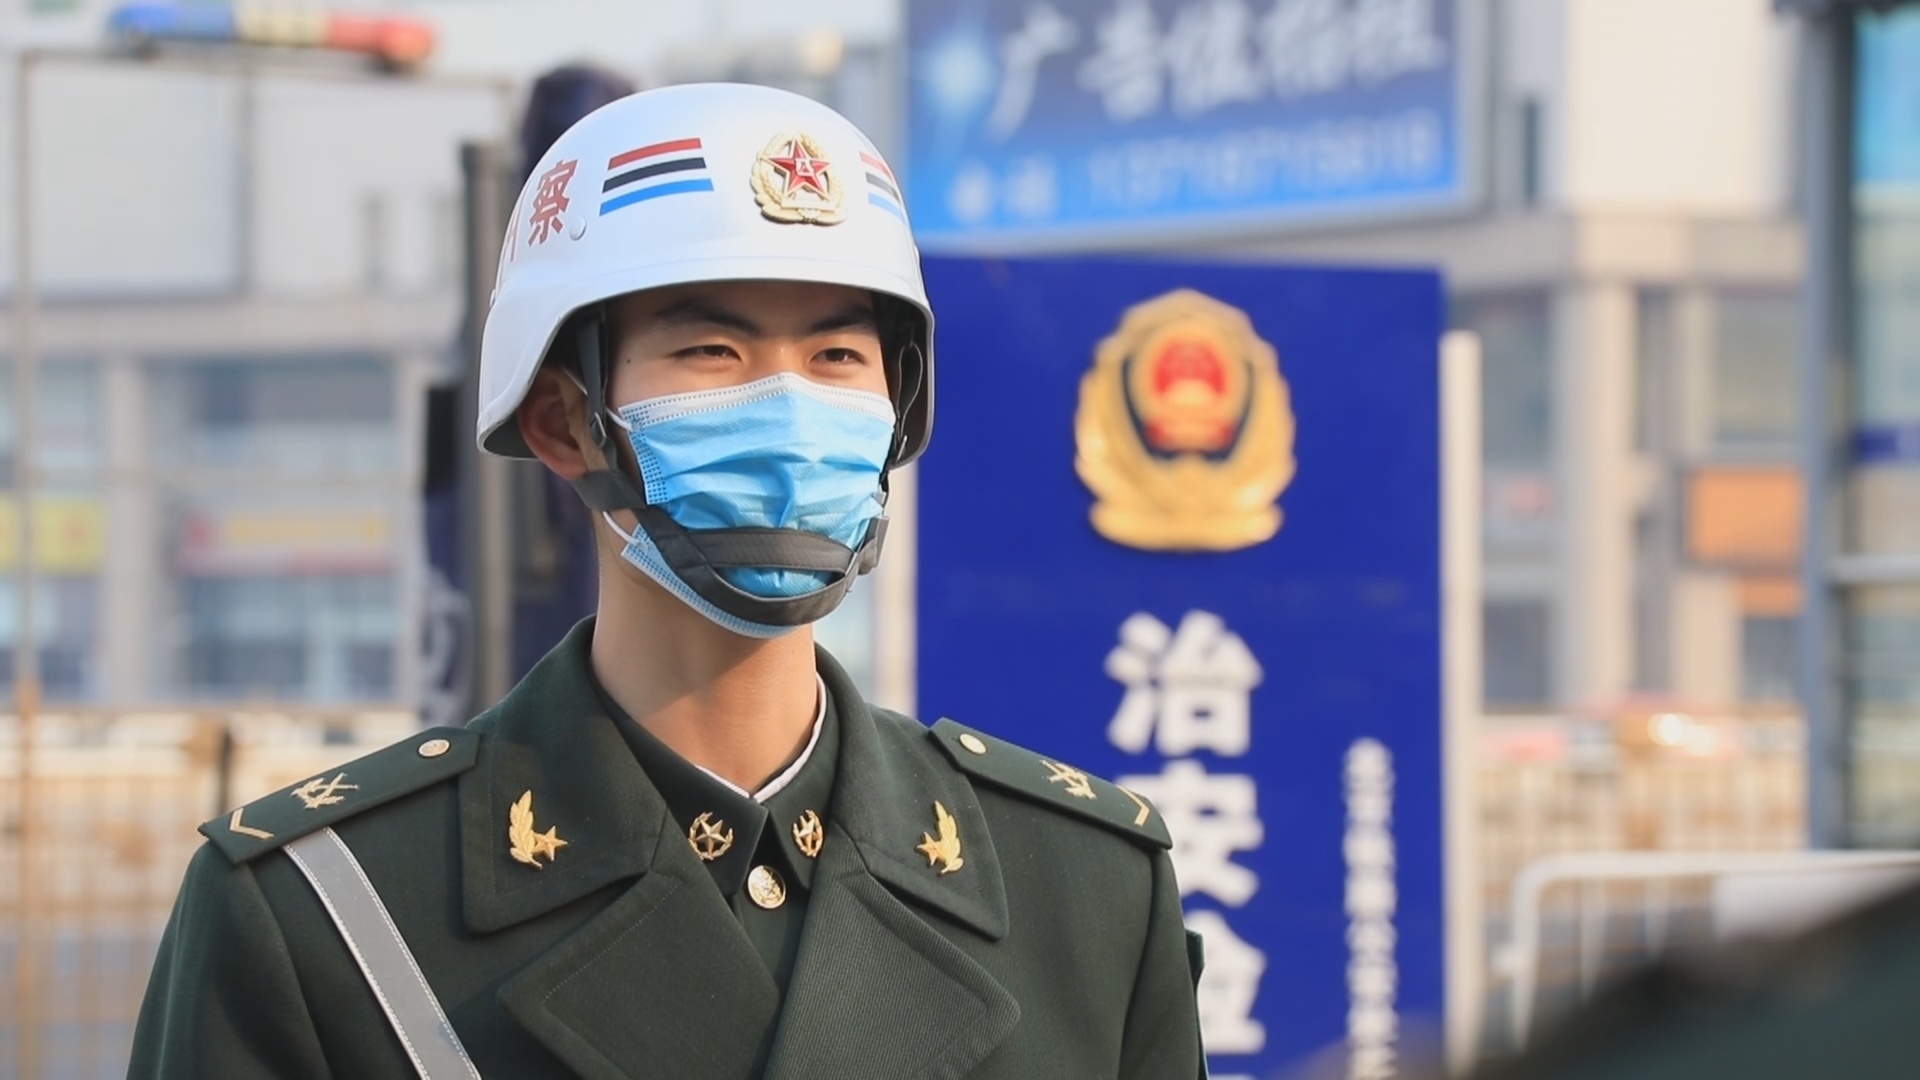 北京卫戍区某纠察连指导员 陈起:巡逻走一路,好事做一路,是我们卫戍